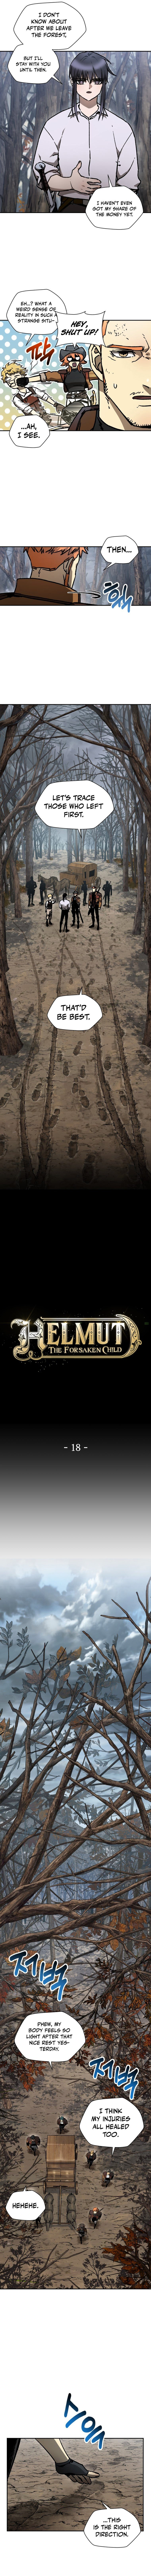 Helmut: The Forsaken Child - Chapter 18 Page 4